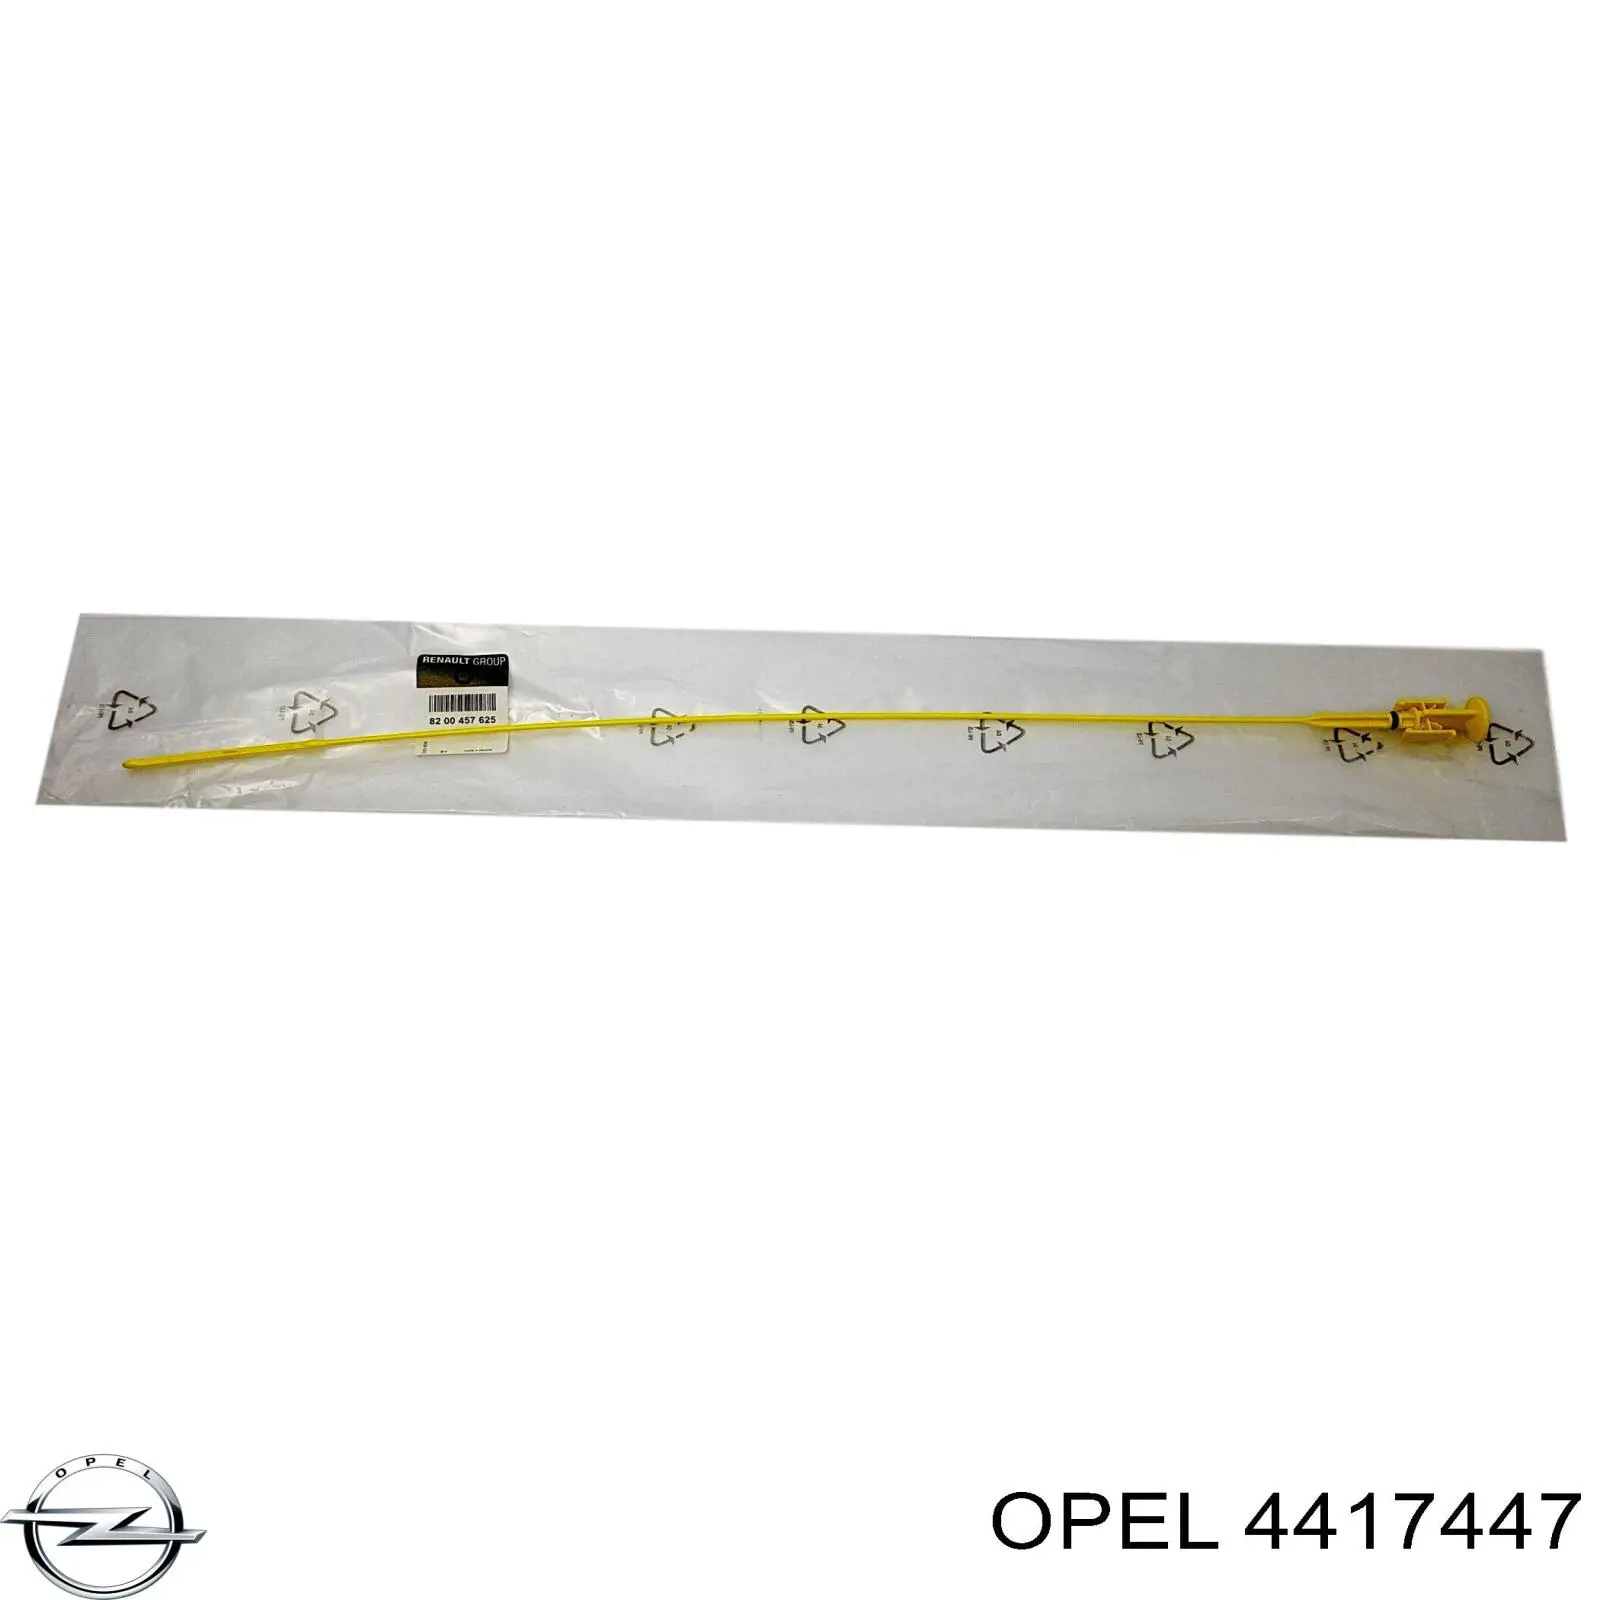 4417447 Opel sonda (indicador do nível de óleo no motor)